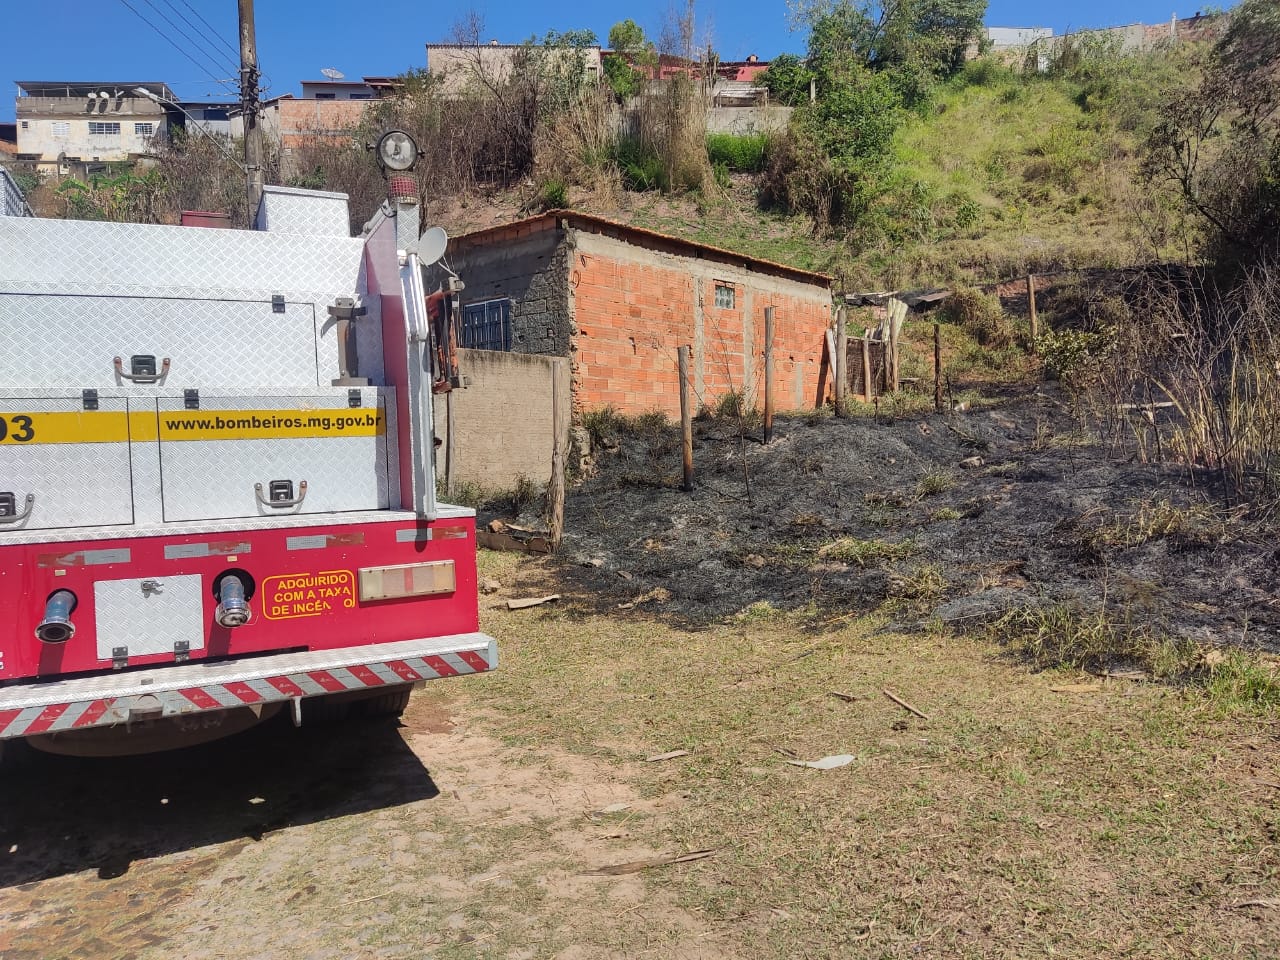 Bombeiros combatem incêndio em vegetação próximo a residências no bairro Arcádia